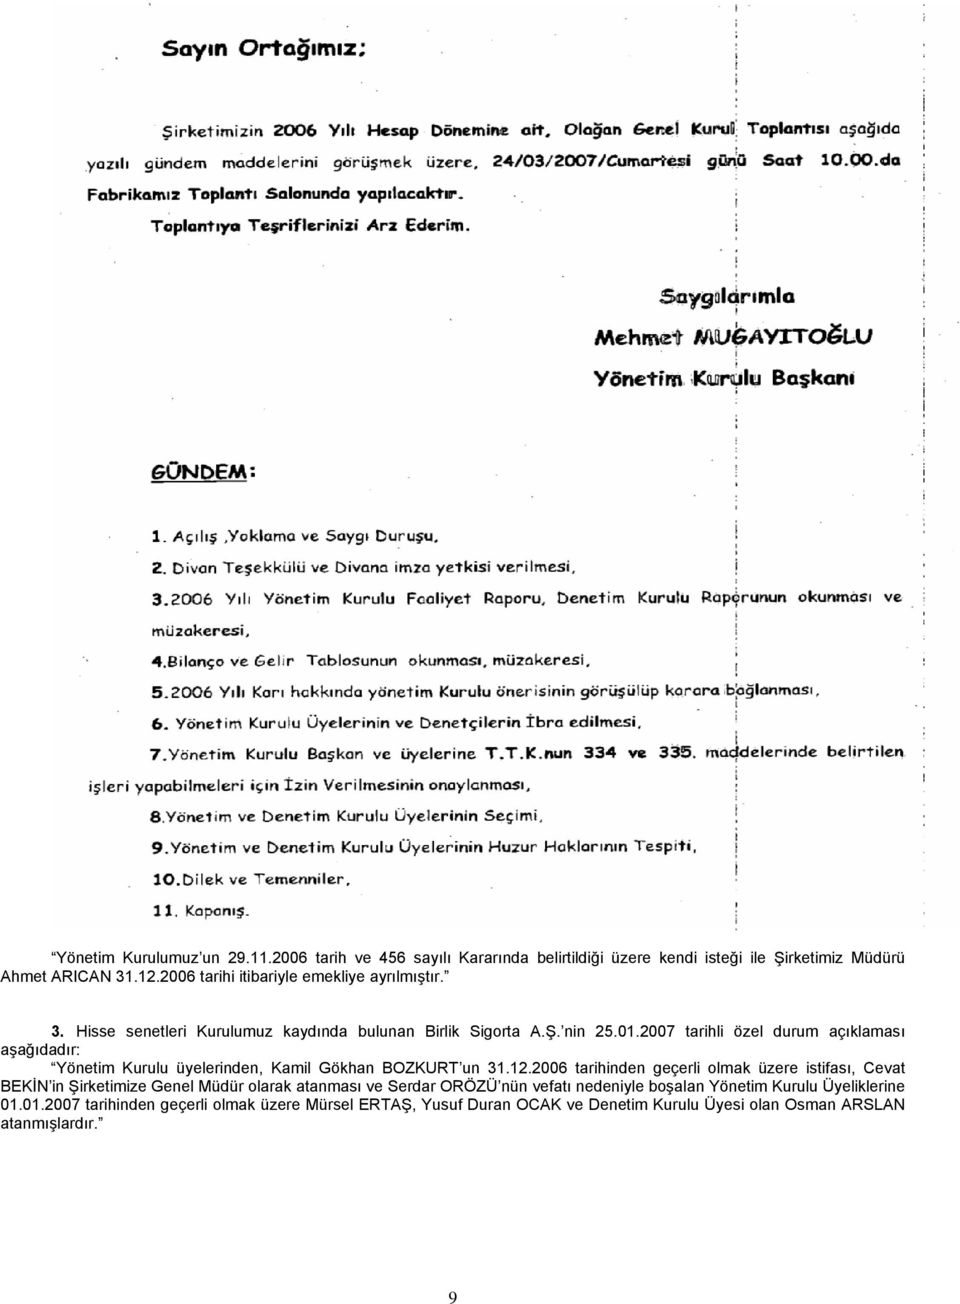 2007 tarihli özel durum açıklaması aşağıdadır: Yönetim Kurulu üyelerinden, Kamil Gökhan BOZKURT un 31.12.